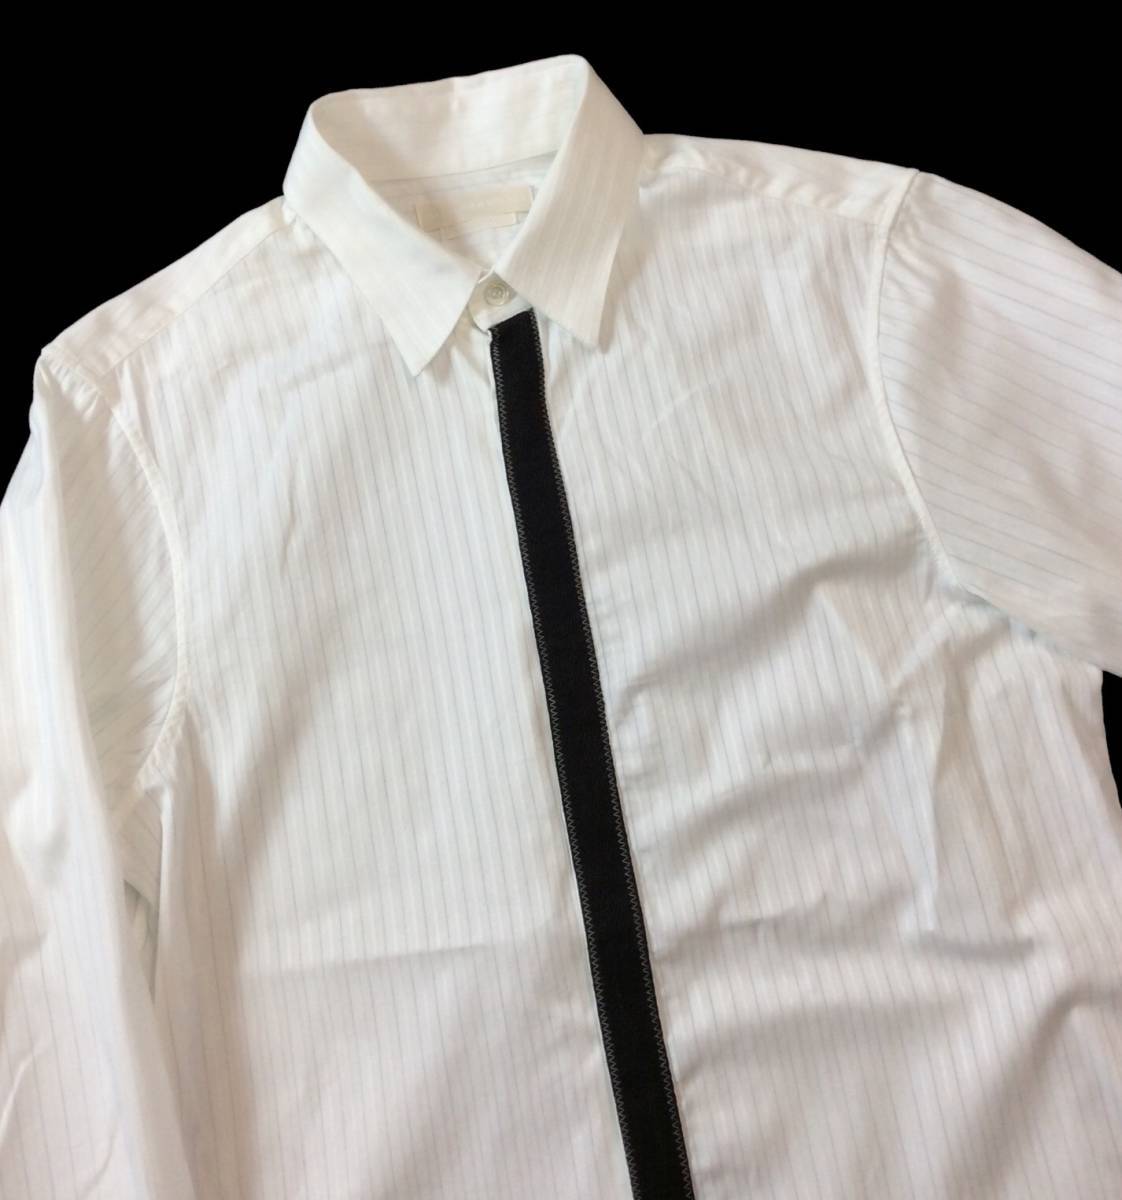 アレキサンダーマックイーン ALEXANDERMcQUEEN ITALY製 ストライプ ドレスシャツ 長袖 隠しボタン ホワイト/ブラック メンズ 46 送料250円の画像2